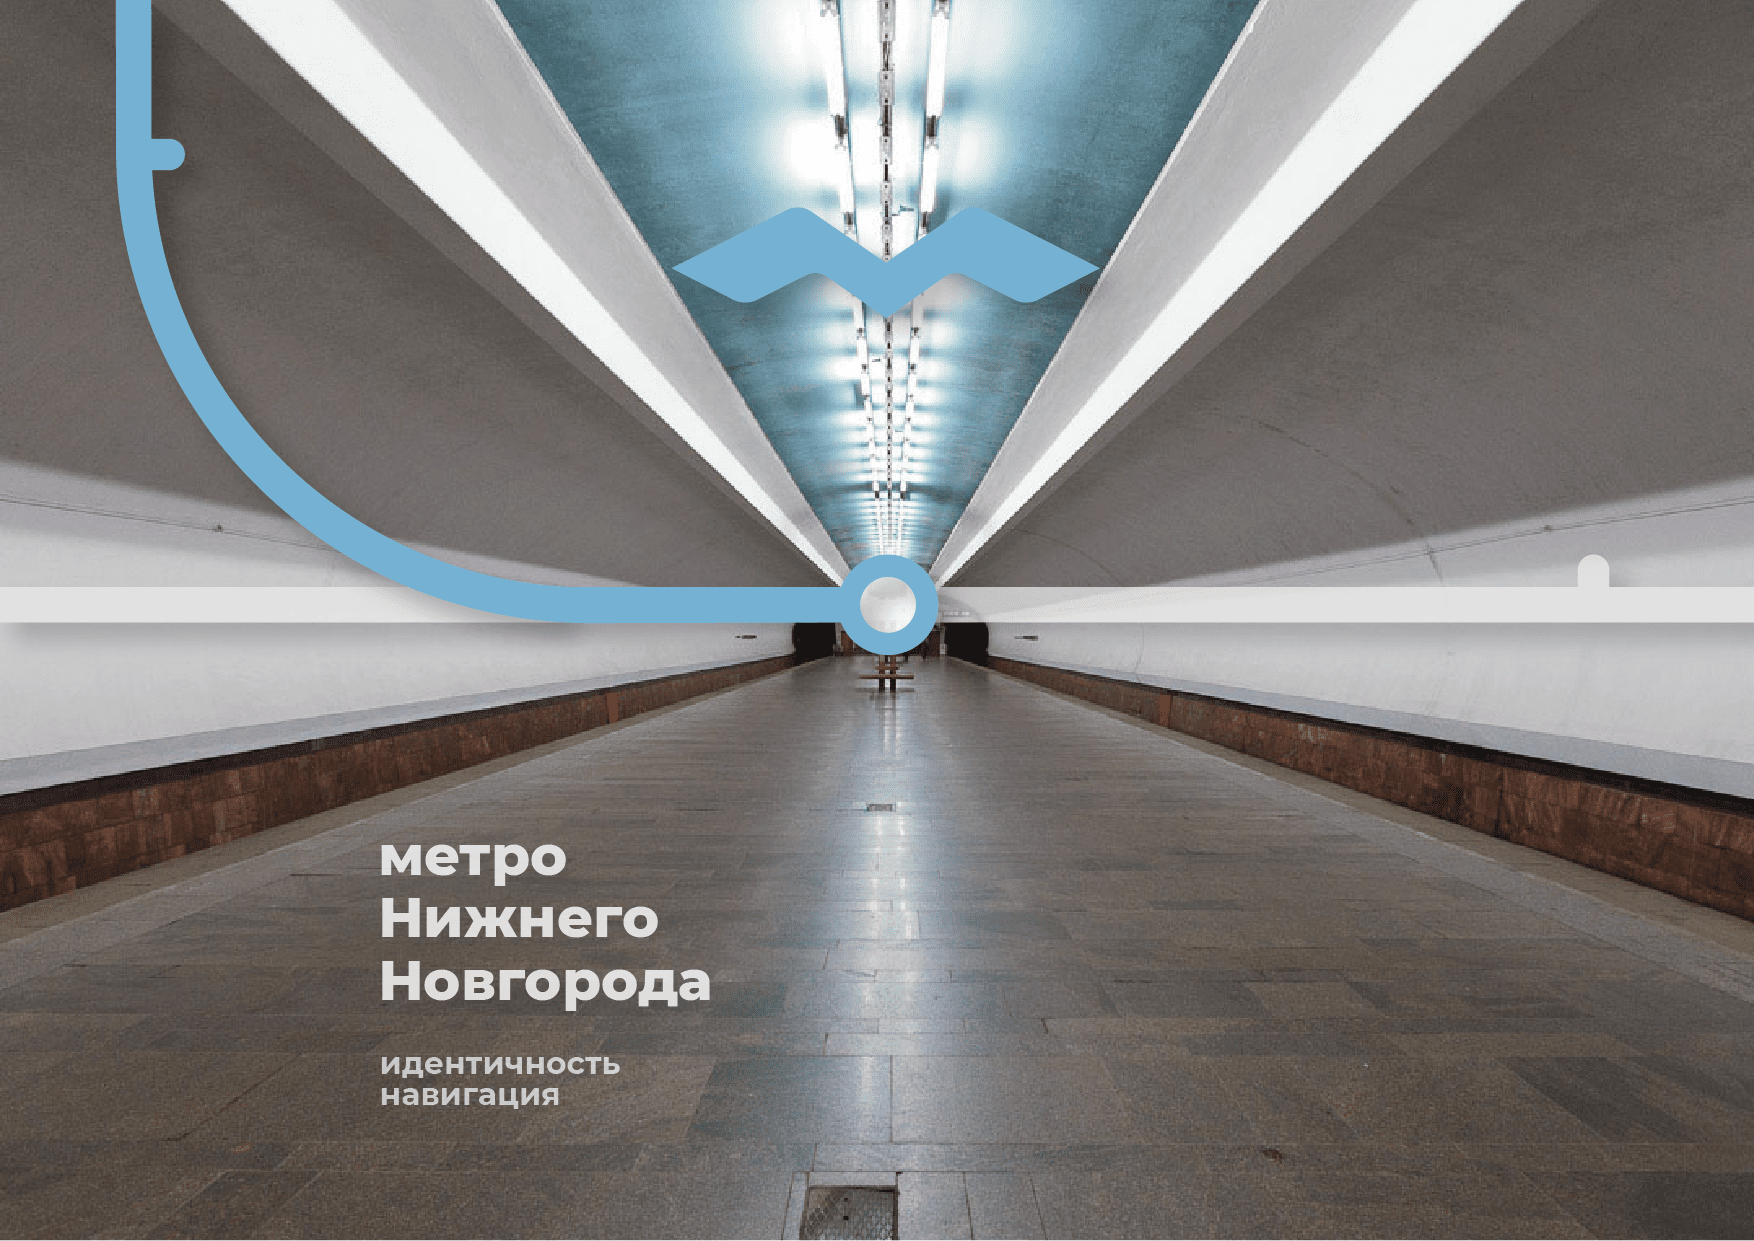 Визуальная идентичность и навигация для нижегородского метро